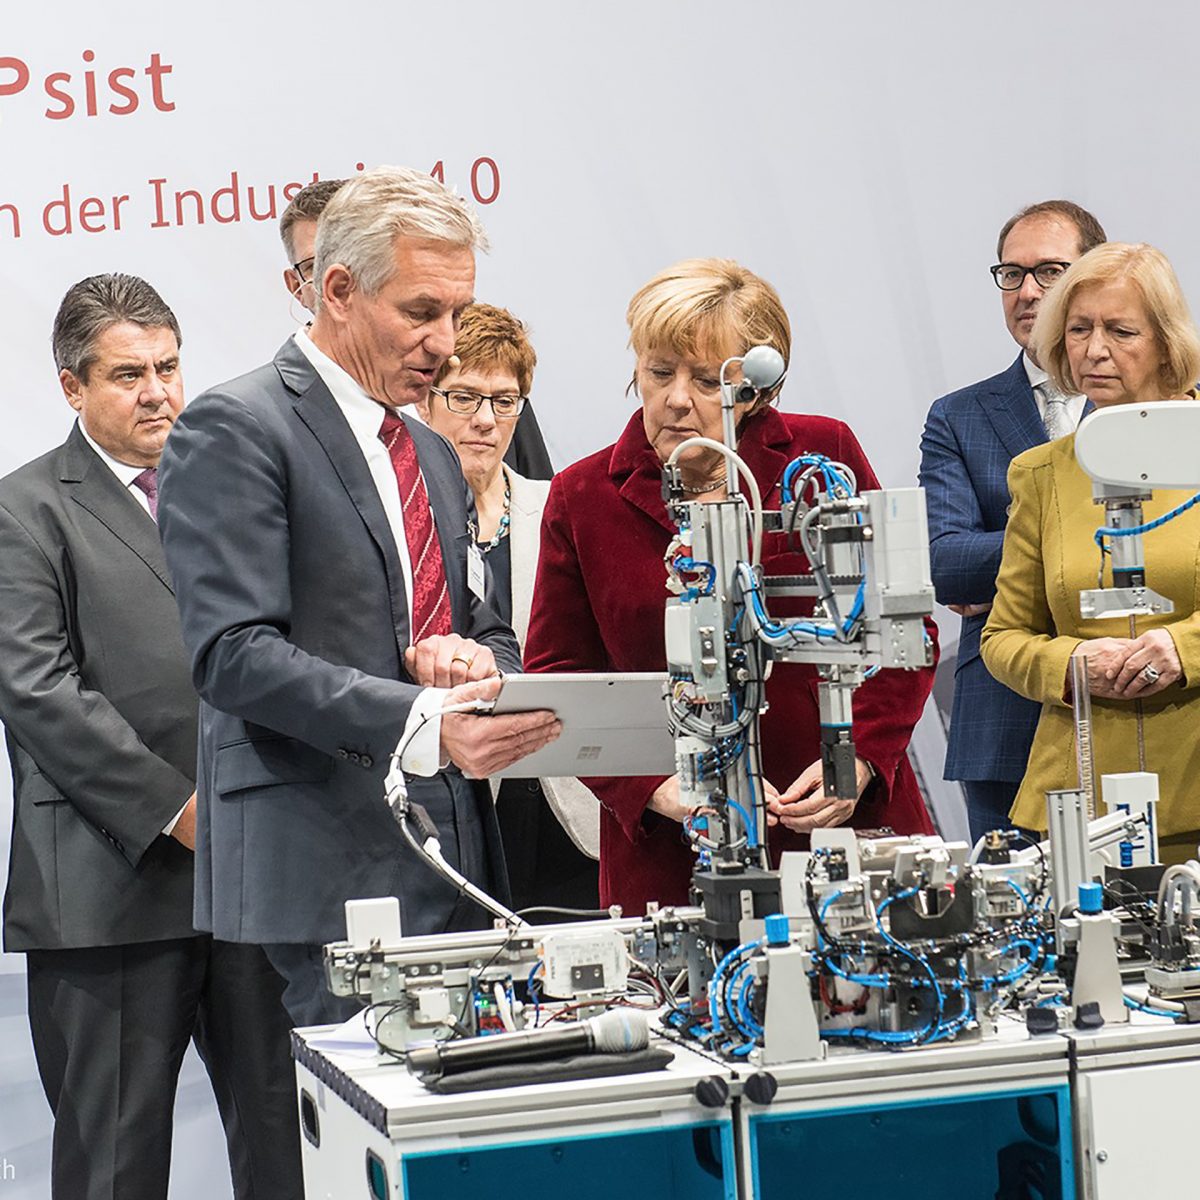 Eberhard Veit und Angela Merkel diskutieren vor einem technischen Gerät.